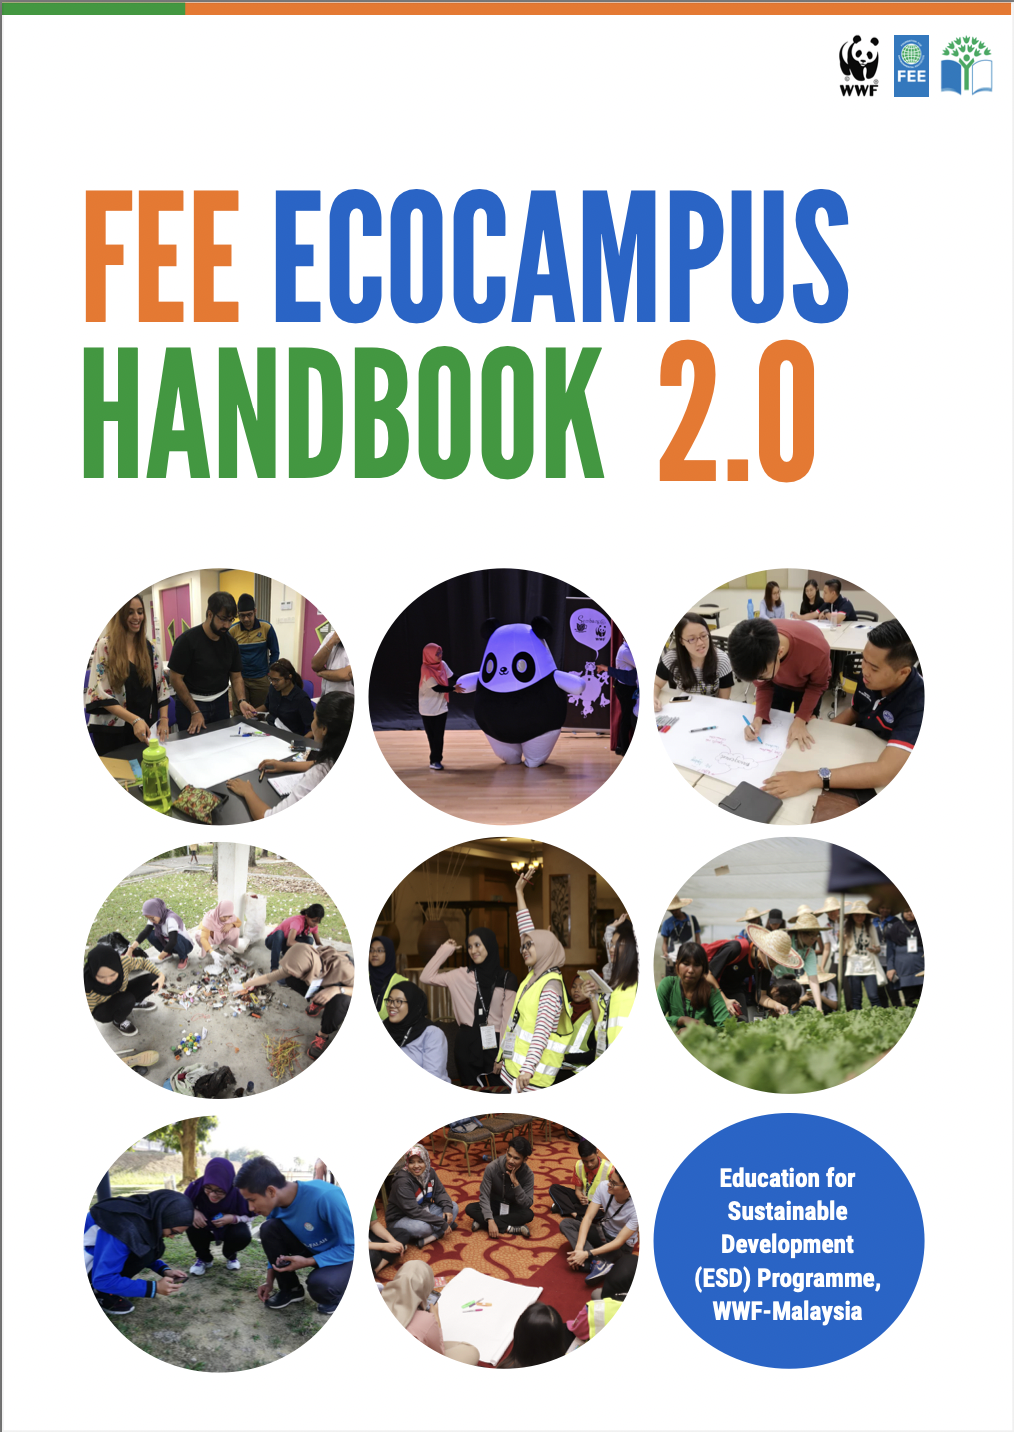 Fee ecocampus handbook 2.0